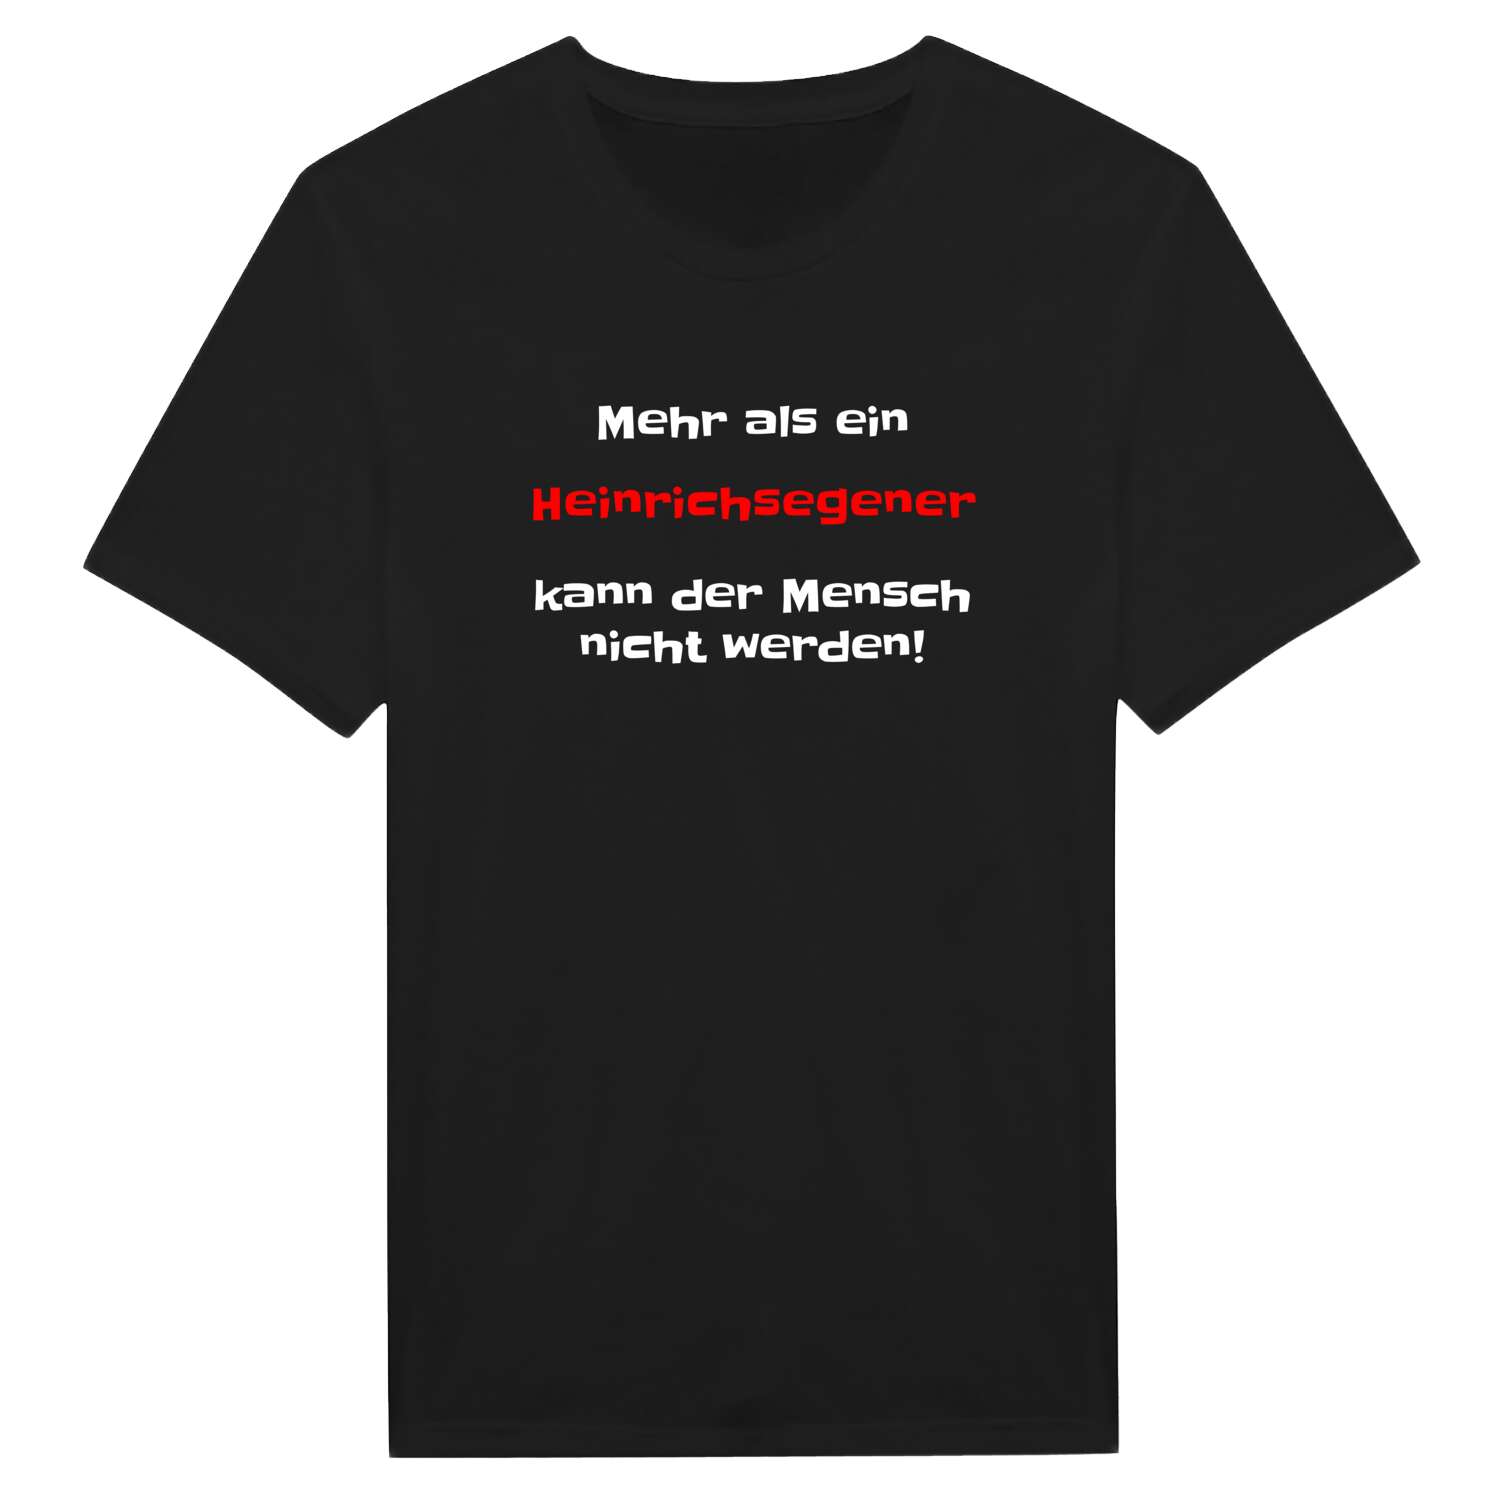 Heinrichsegen T-Shirt »Mehr als ein«